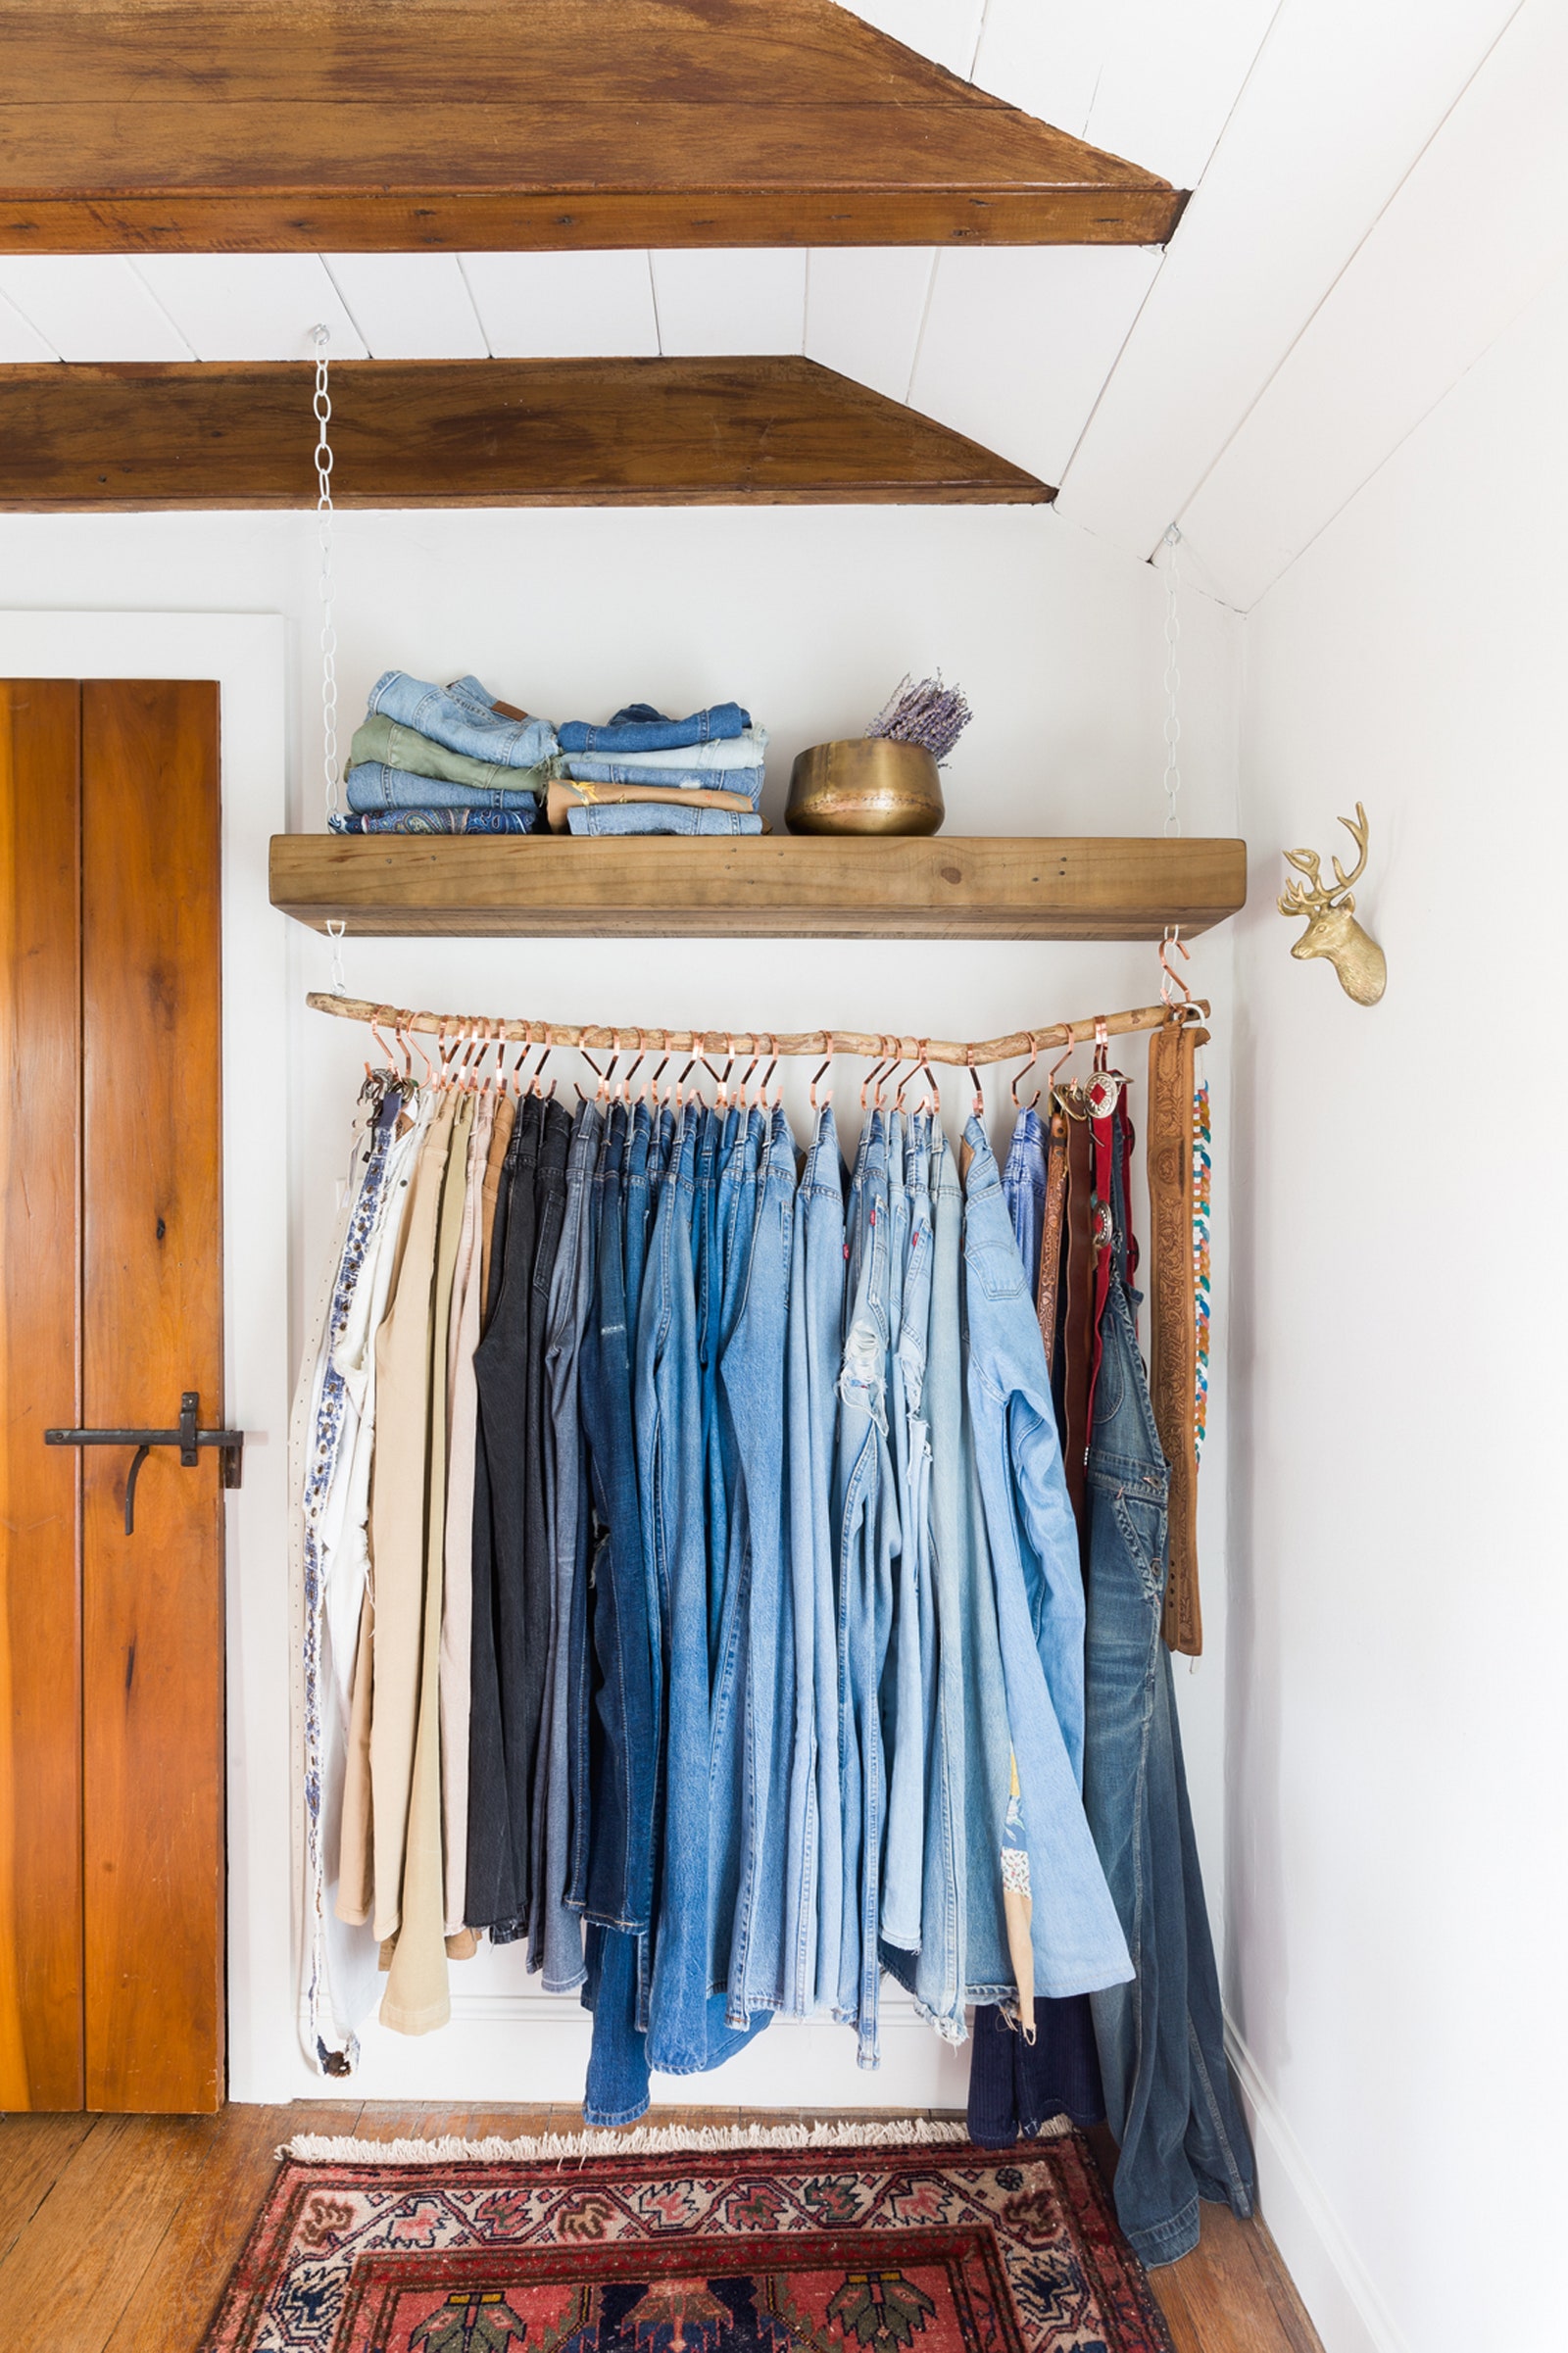 Синий цвет в гардеробной поддерживает коллекция джинсов  знак уважения столице музыки кантри.